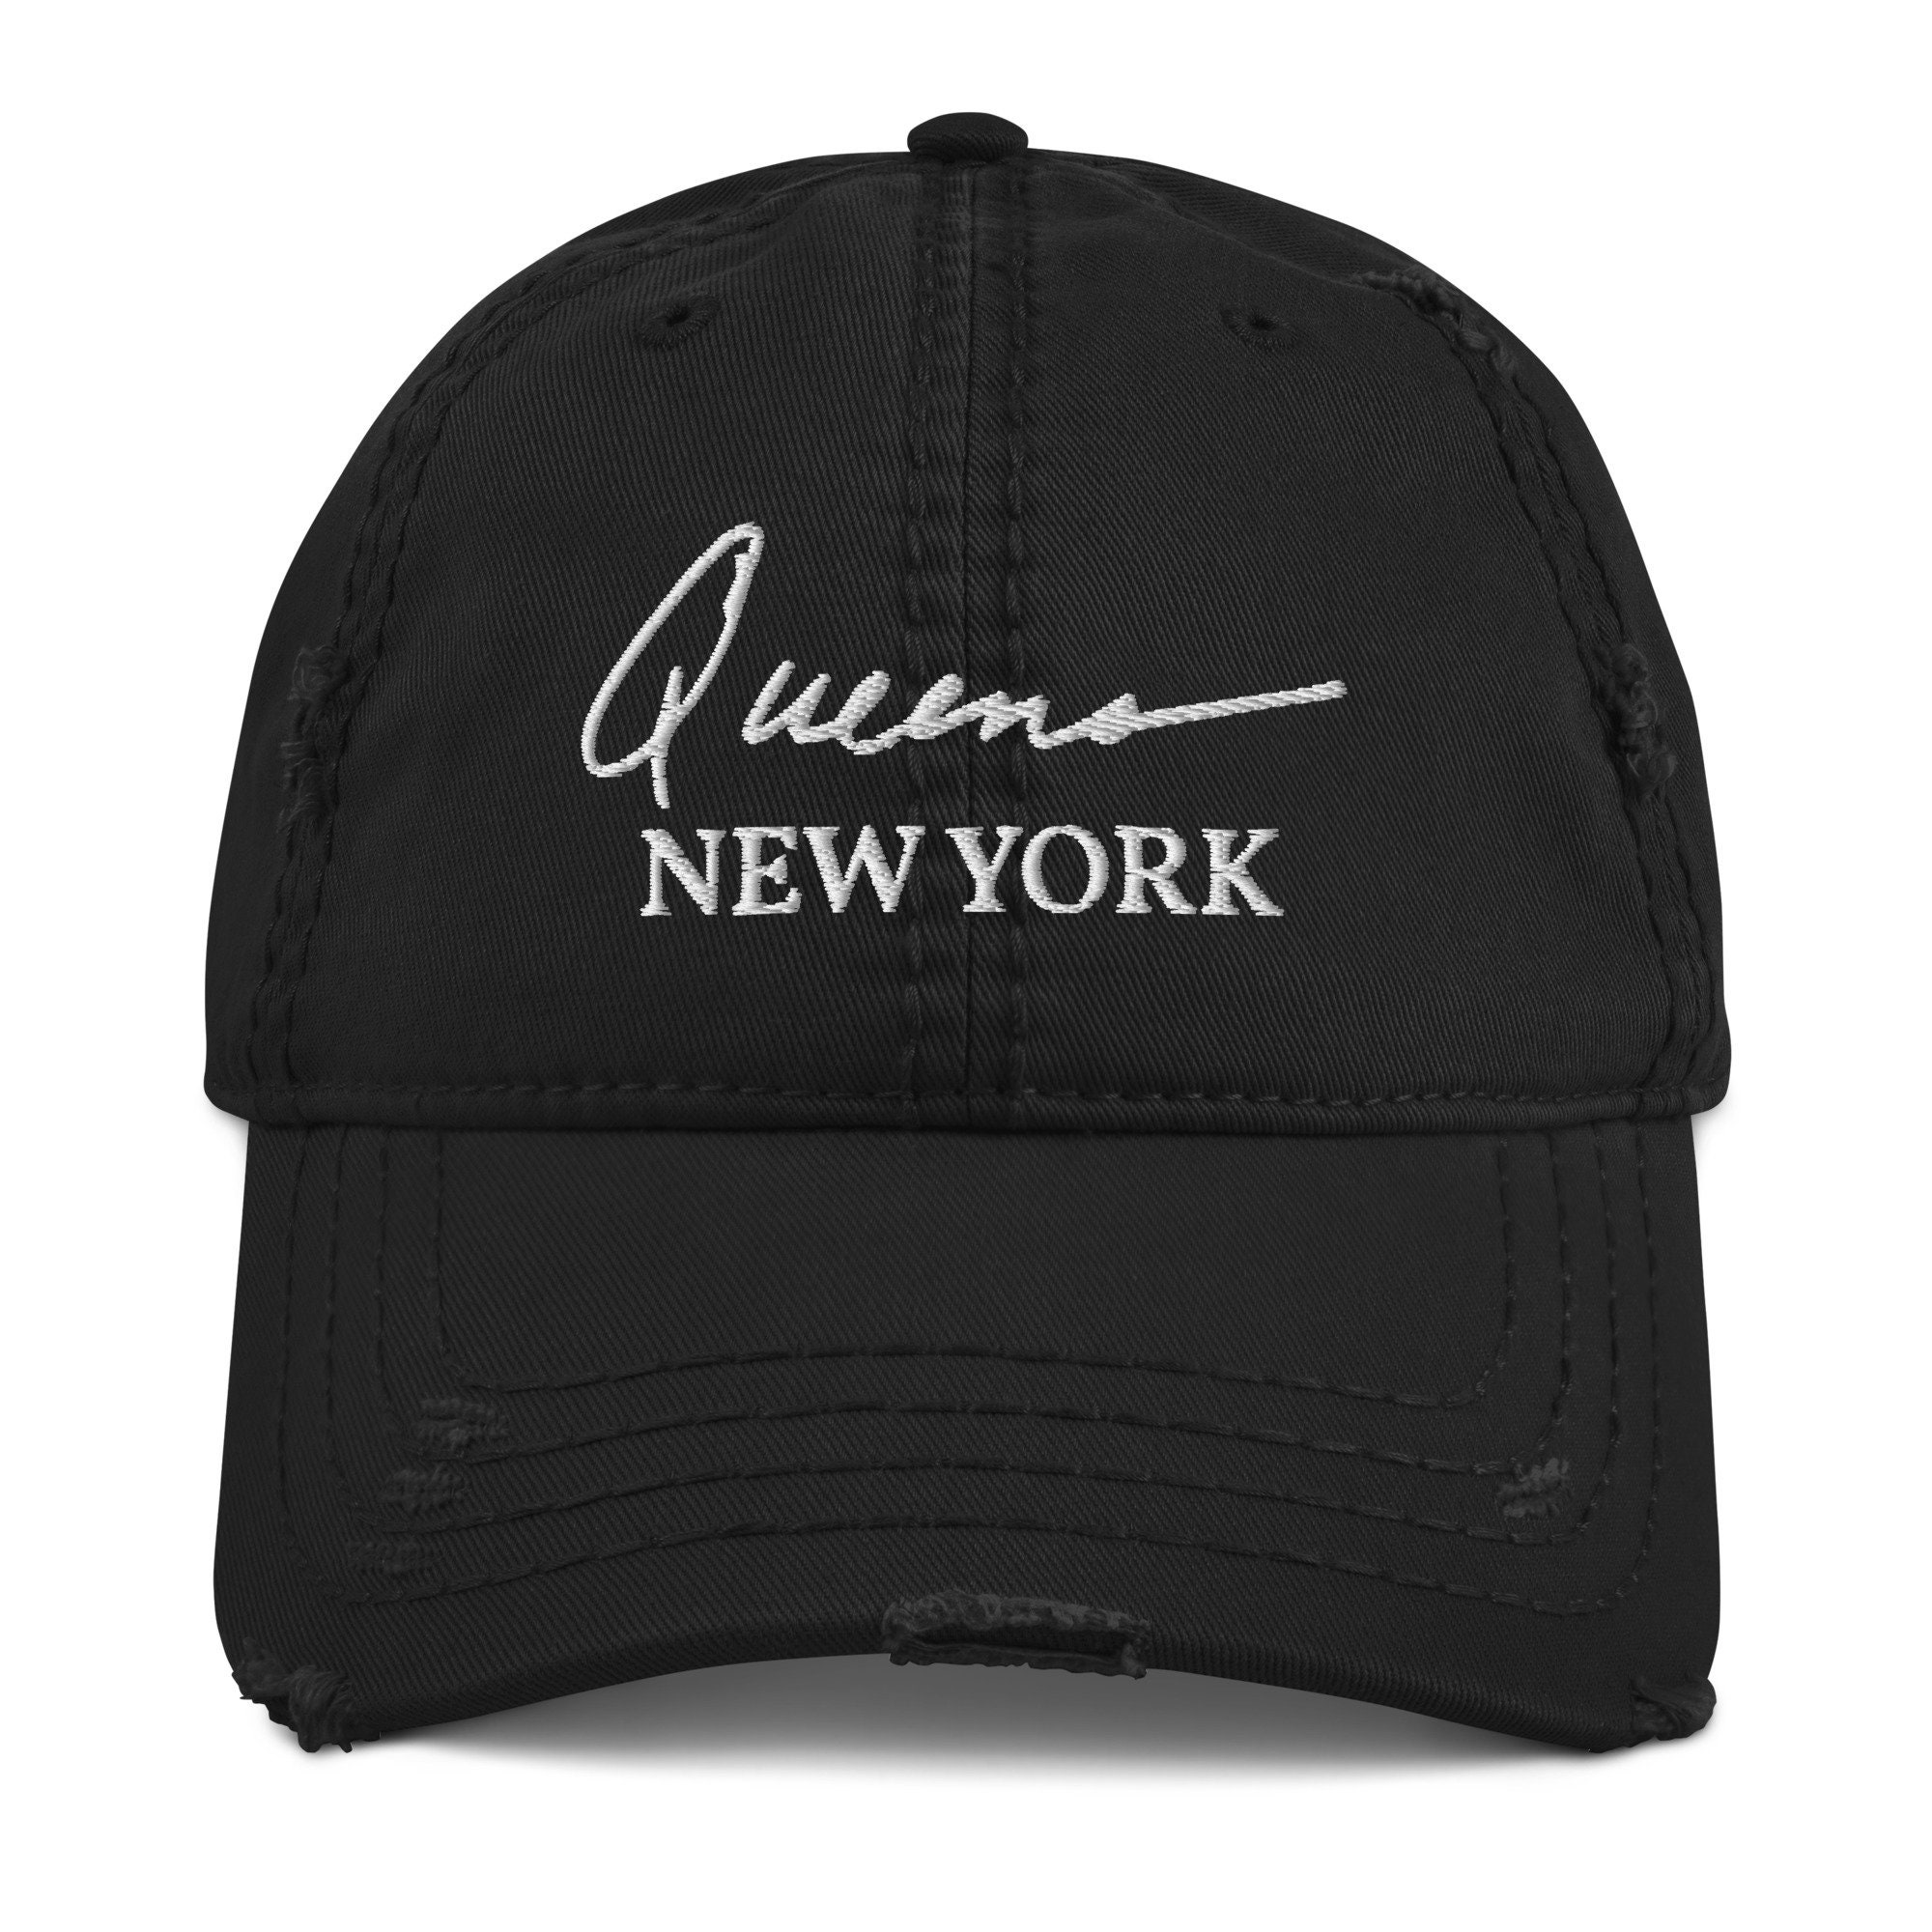 Queens Hat Queens New York Hat NY Borough Hat Queensbridge   Etsy